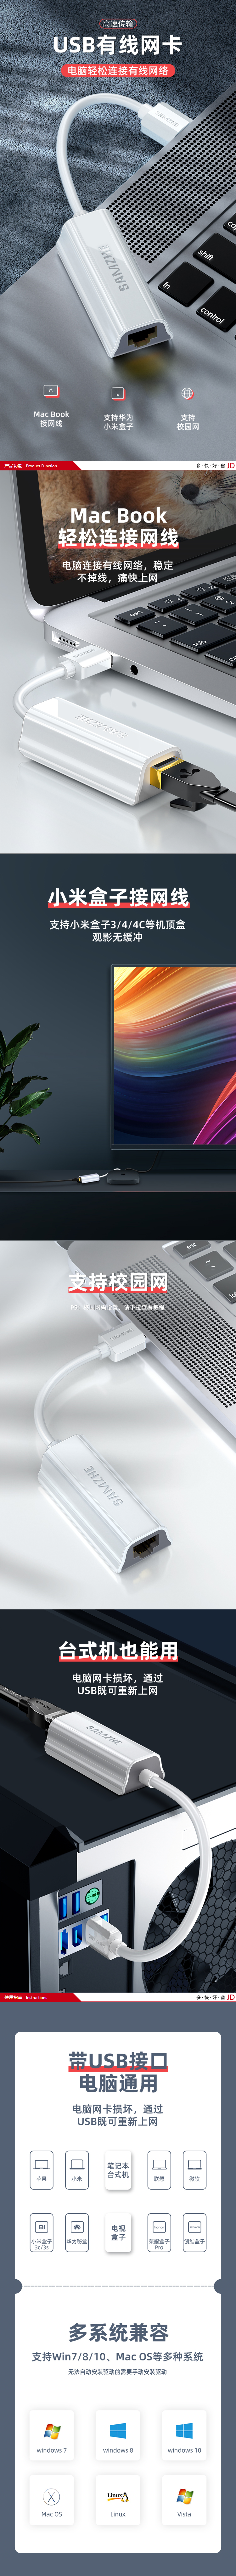 【山泽UW011】山泽(SAMZHE) USB转网口 USB2.0百兆有线网卡 苹果Mac小米盒子笔.png